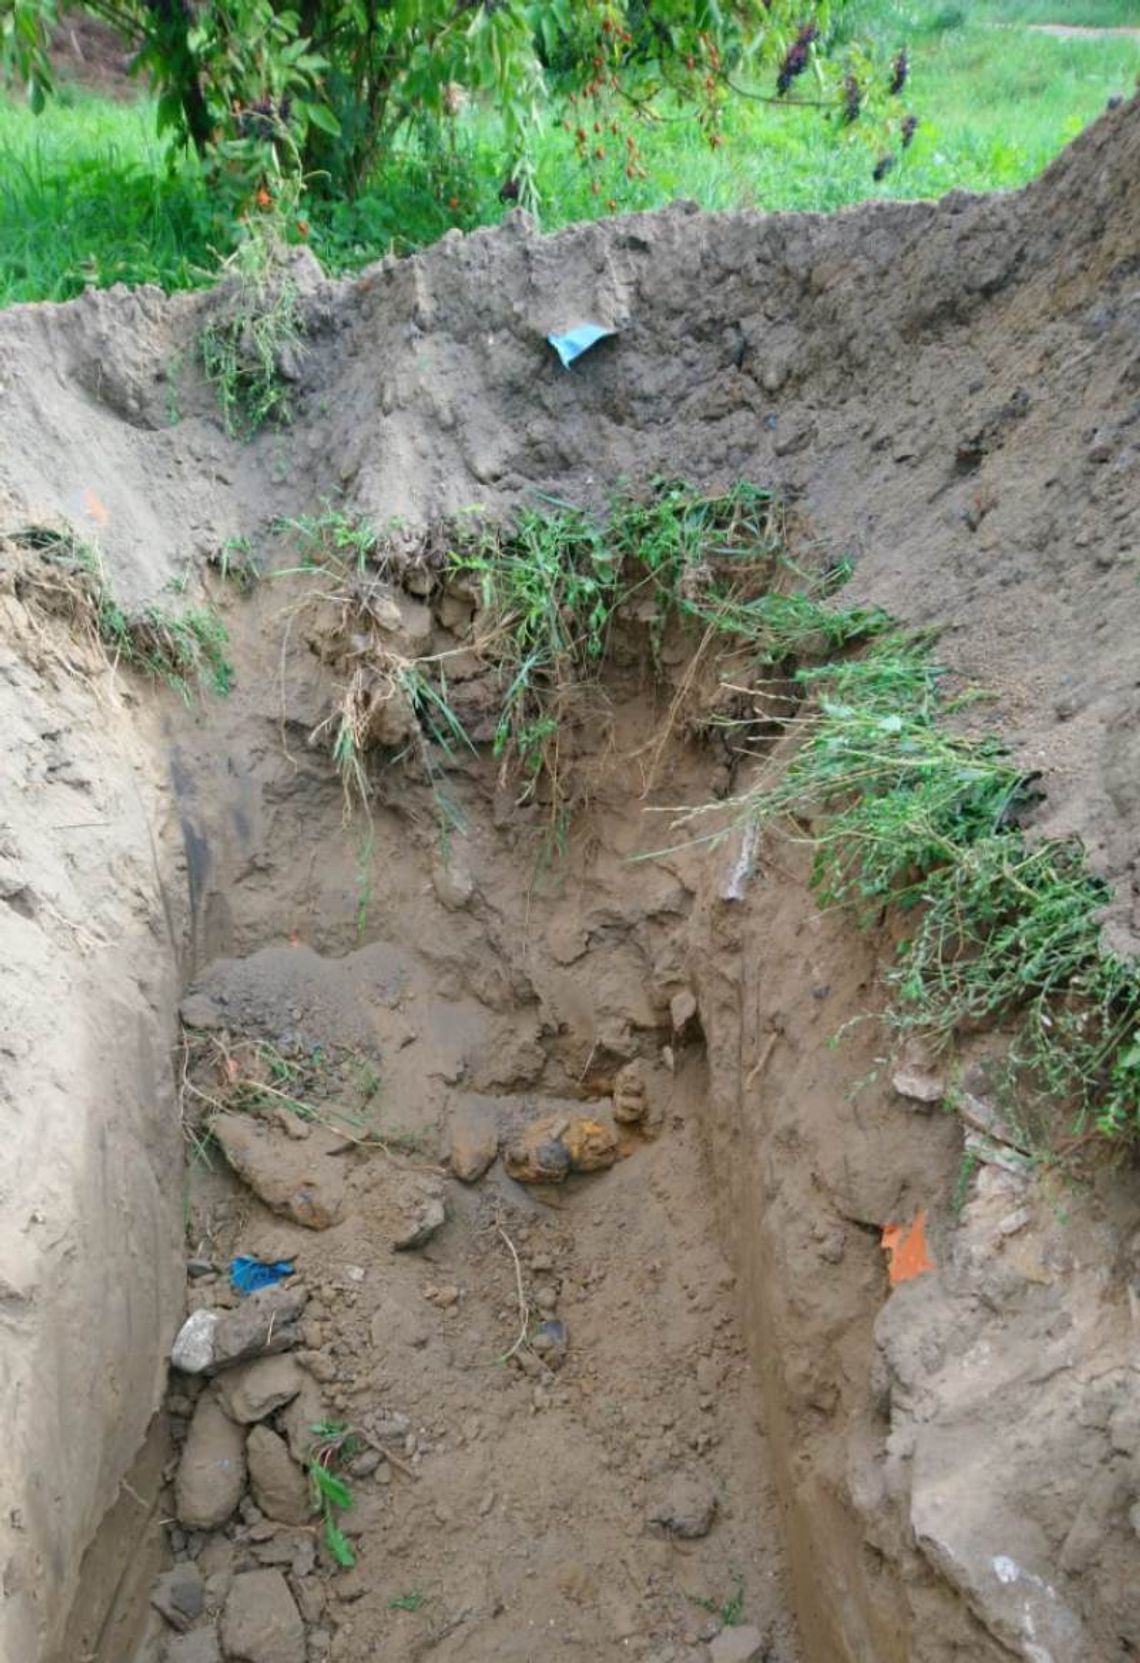 Ręczny granatnik przeciwpancerny i 46 pocisków moździerzowych znaleziono podczas prac ziemnych w regionie